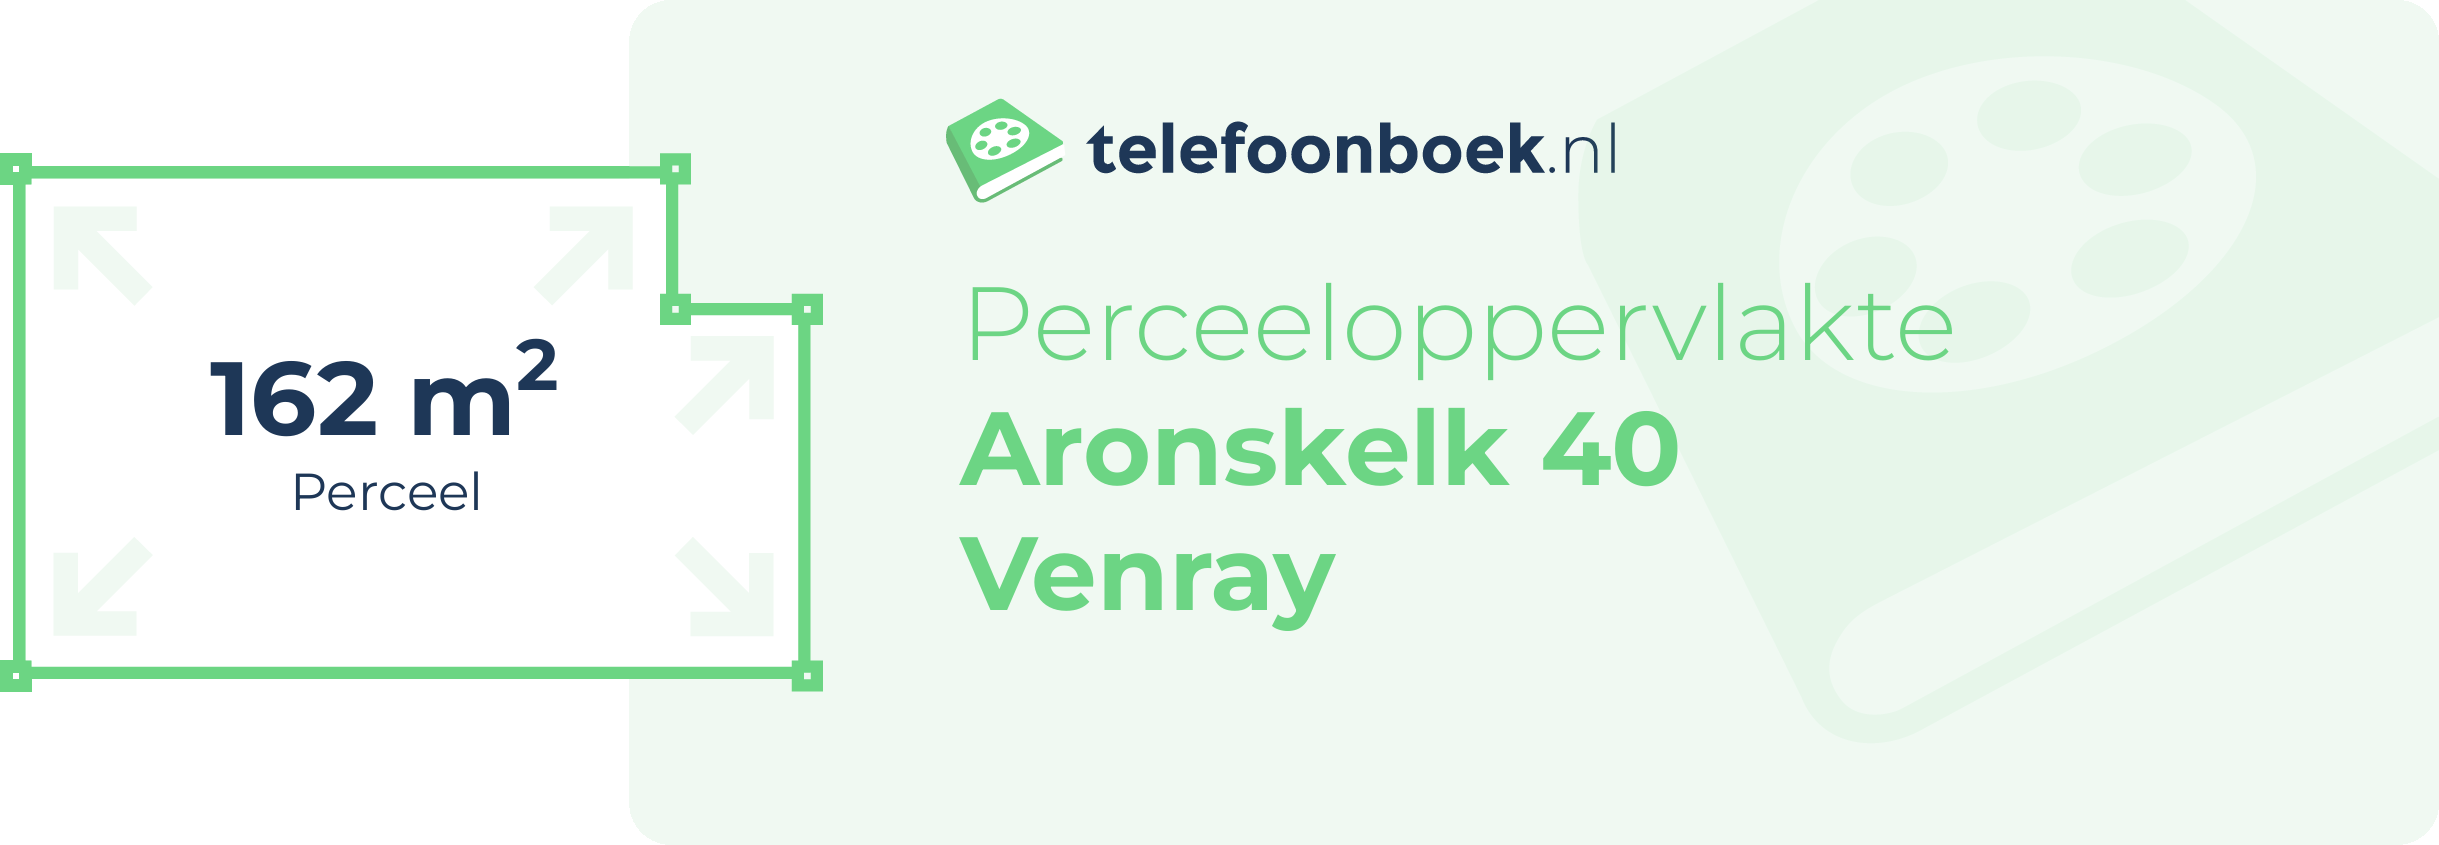 Perceeloppervlakte Aronskelk 40 Venray